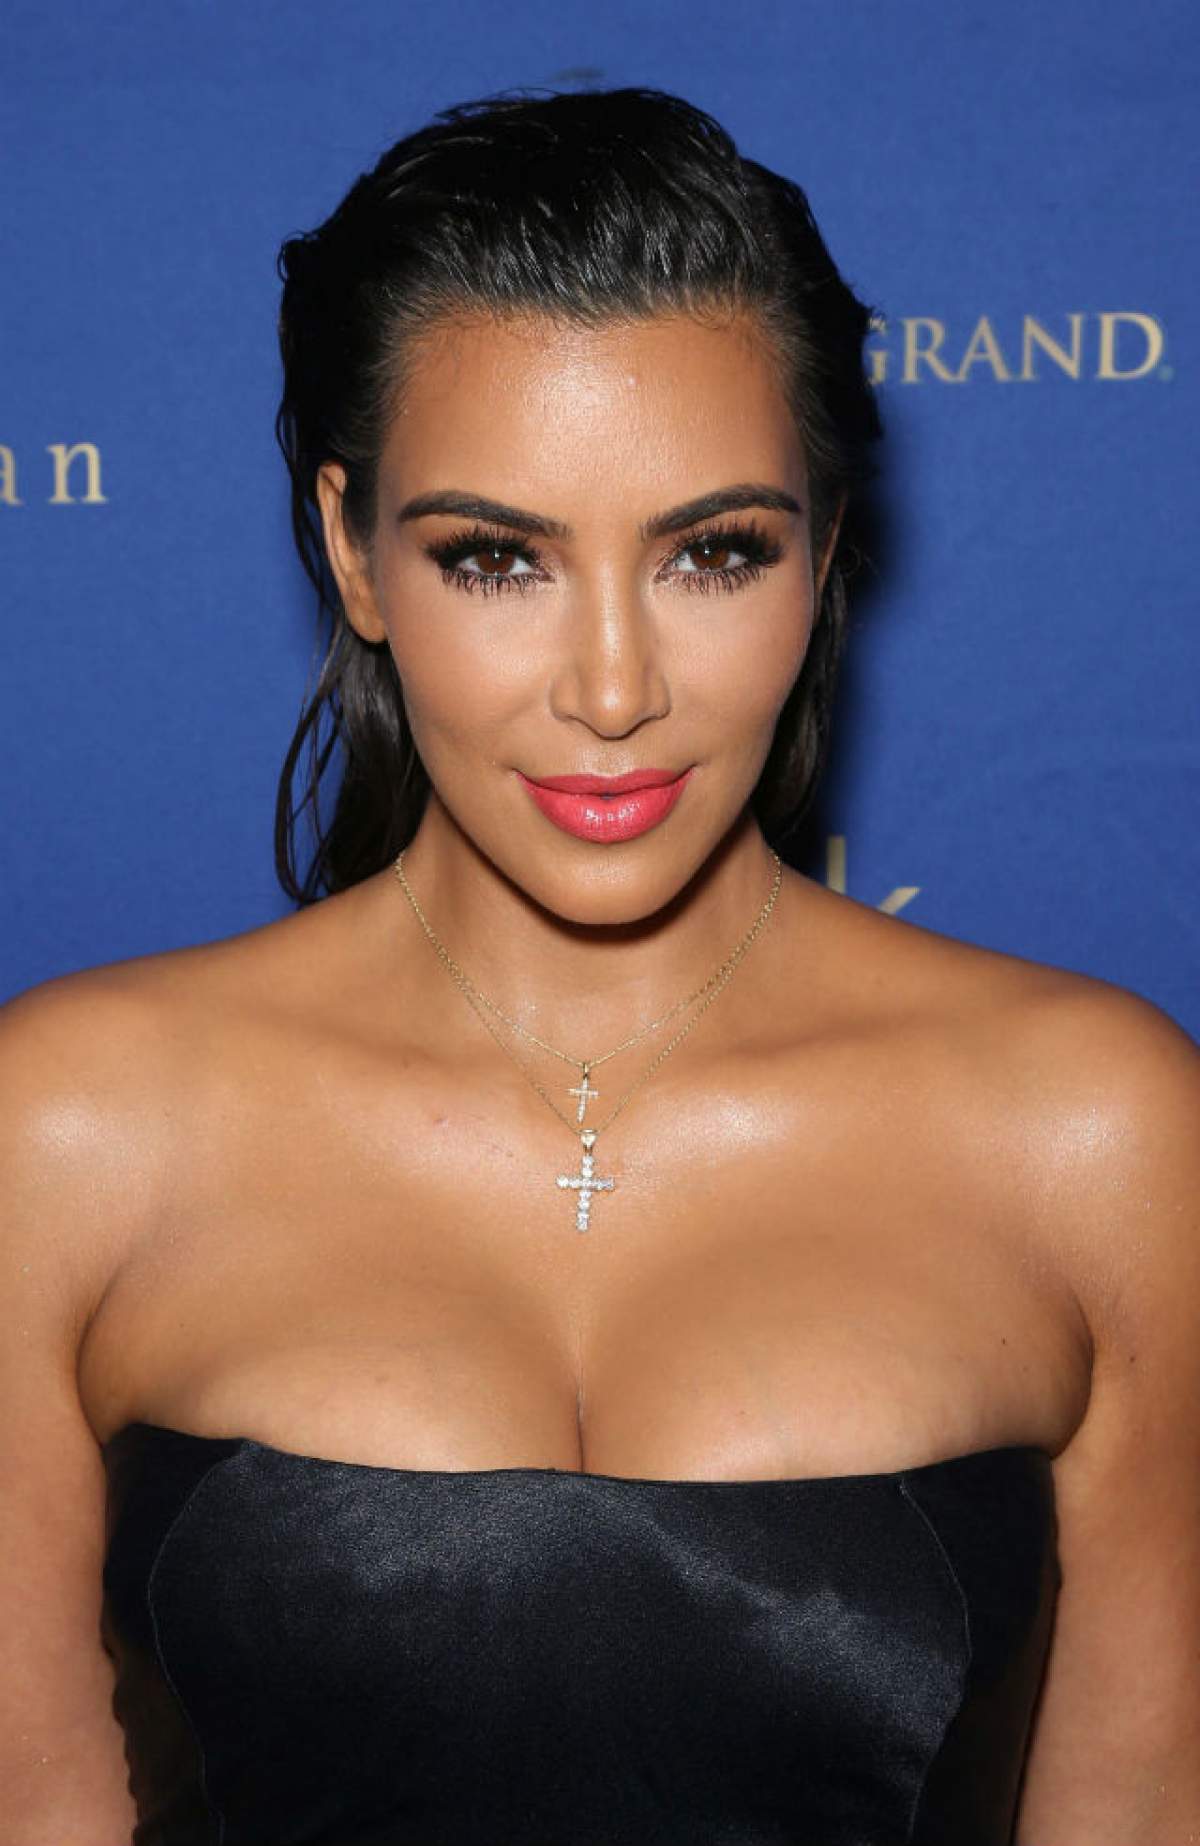 FOTO / "Aoleu, sânii mei!" Kim Kardashian şi-a îndesat formele voluptoase într-o rochie cu câteva numere mai mică